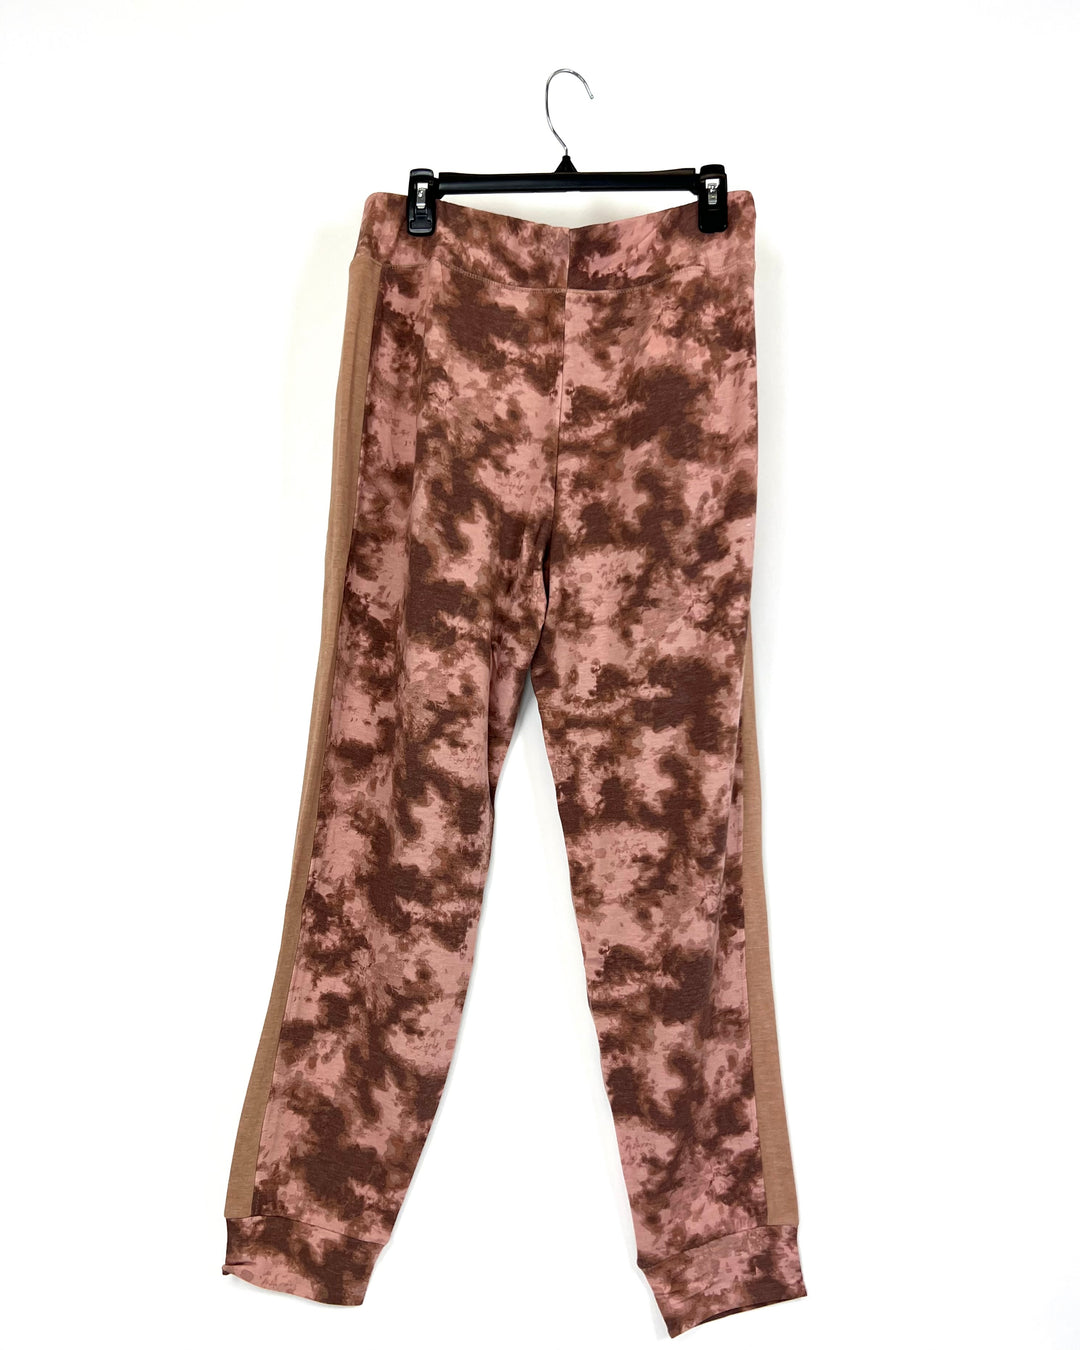 Brown Tie Dye Sweatpants - Size 6/8